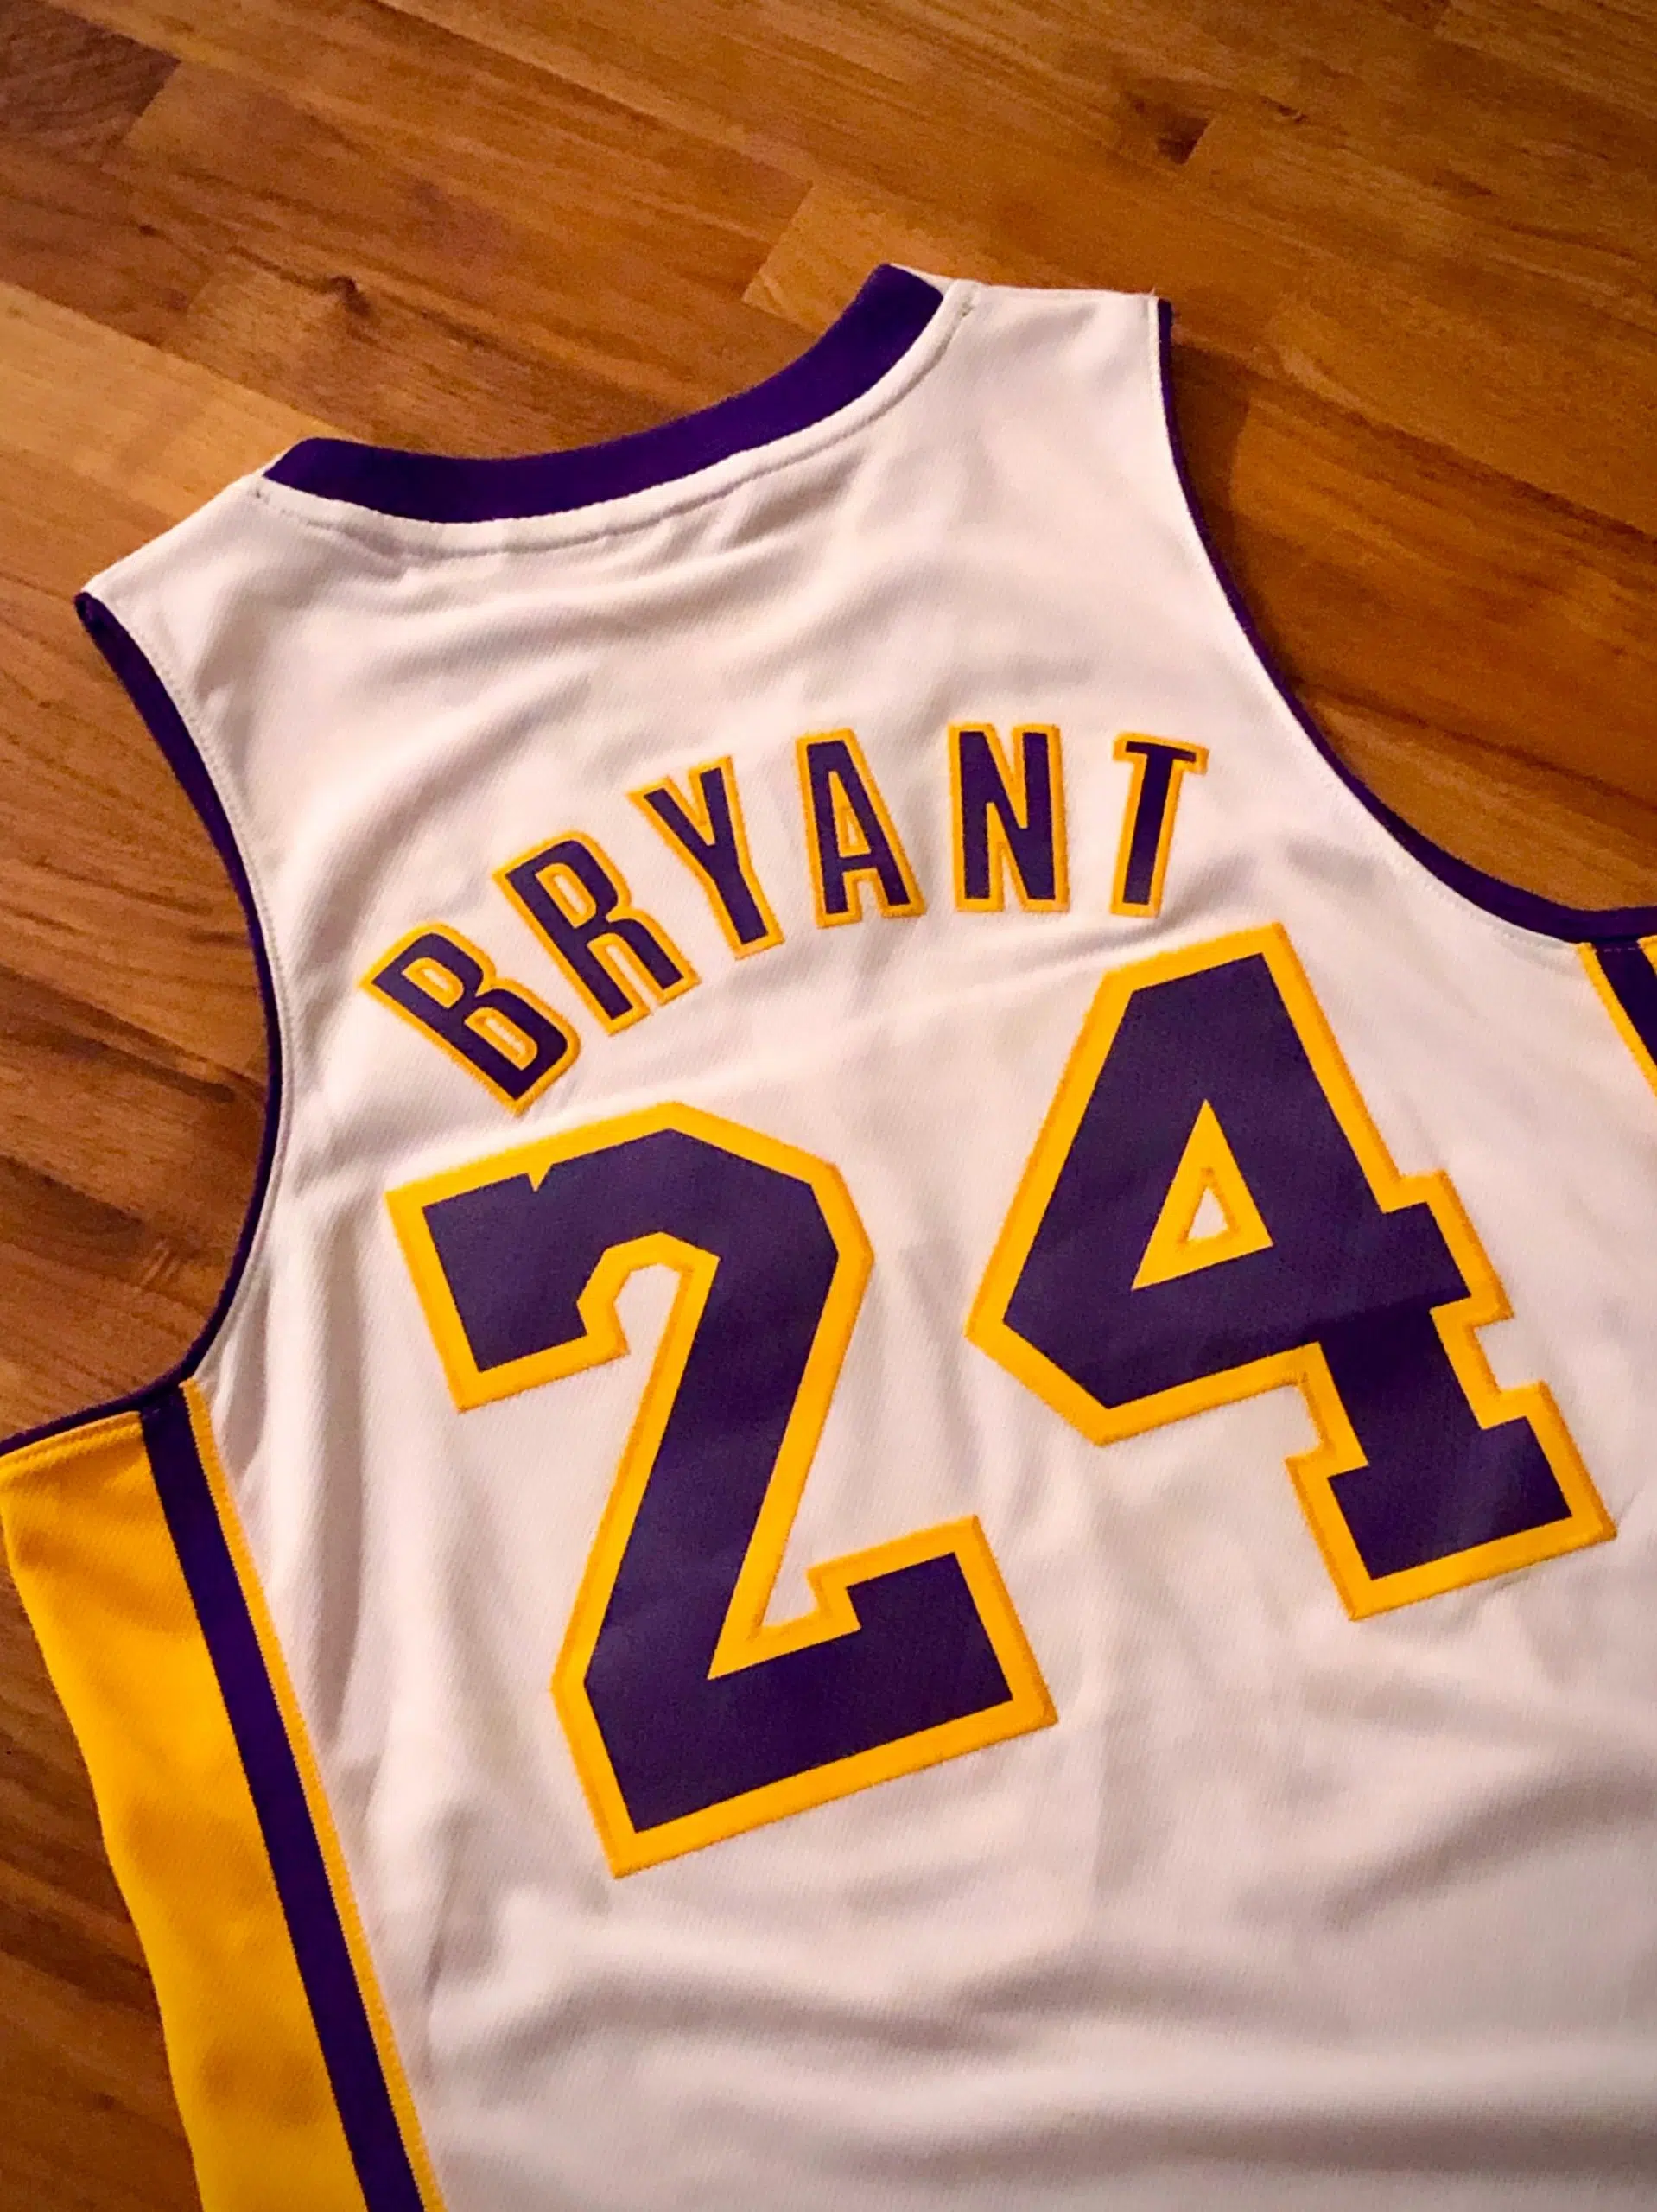 Kobe Bryant MVP jersey sells for $5.8 million